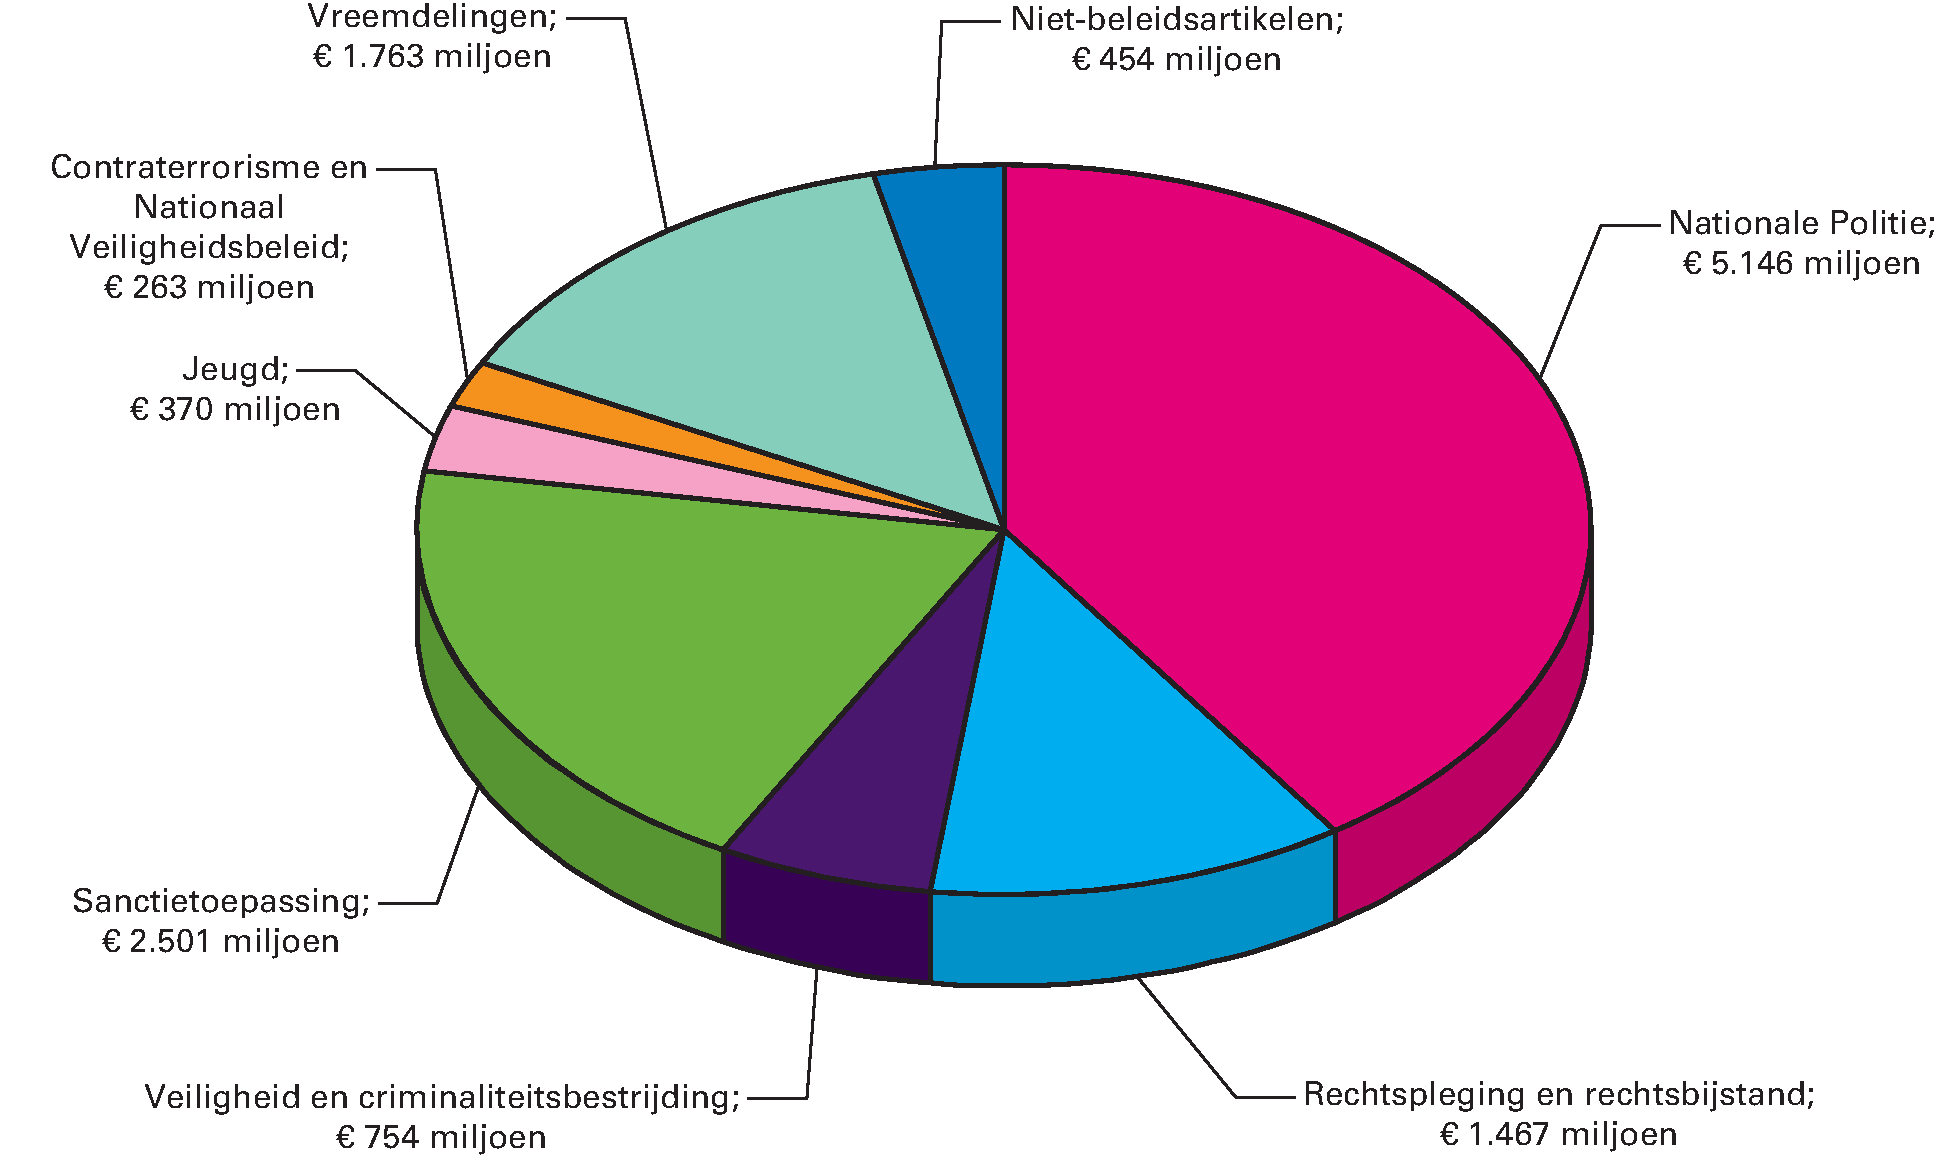 Gerealiseerde uitgaven van het ministerie in 2015 verdeeld over de beleidsartikelen en niet-beleidsartikelen